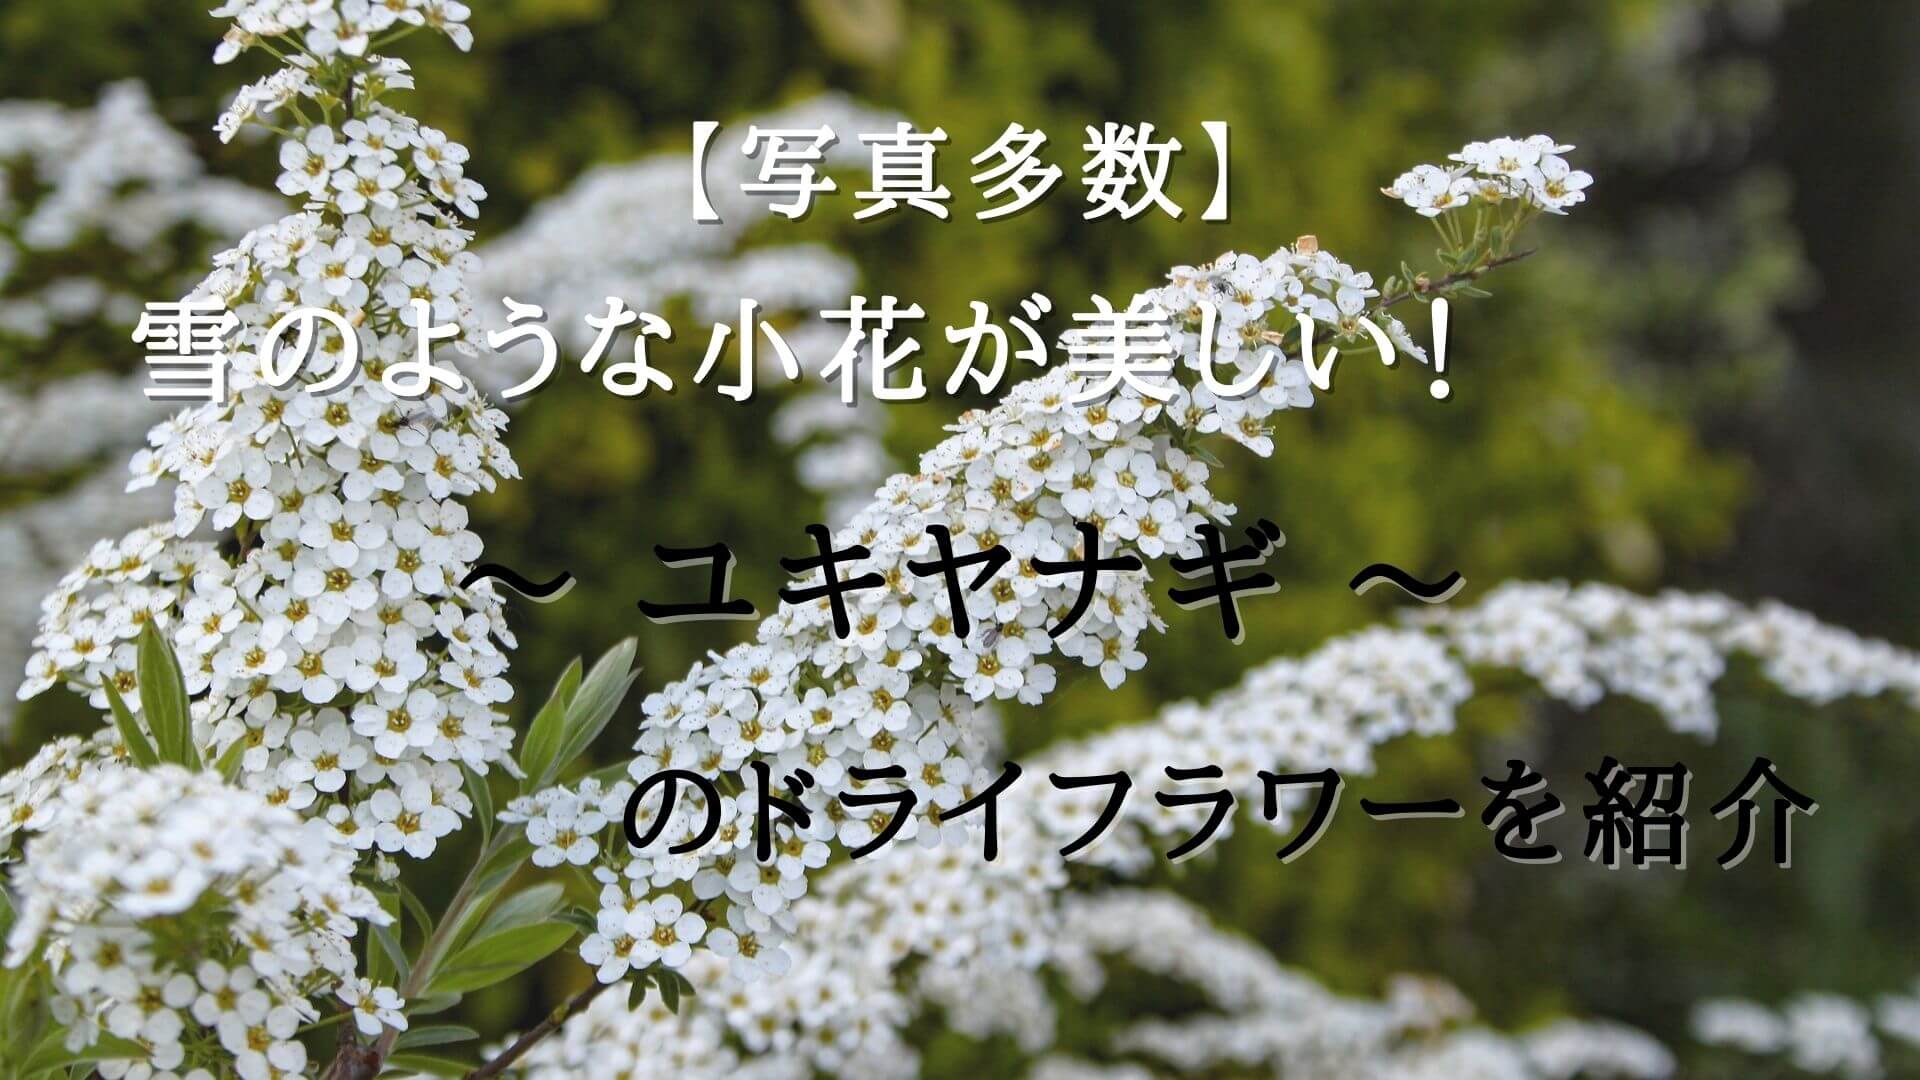 雪のような小花が美しい ユキヤナギのドライフラワーを紹介 花と雑貨を可愛く飾るブログ